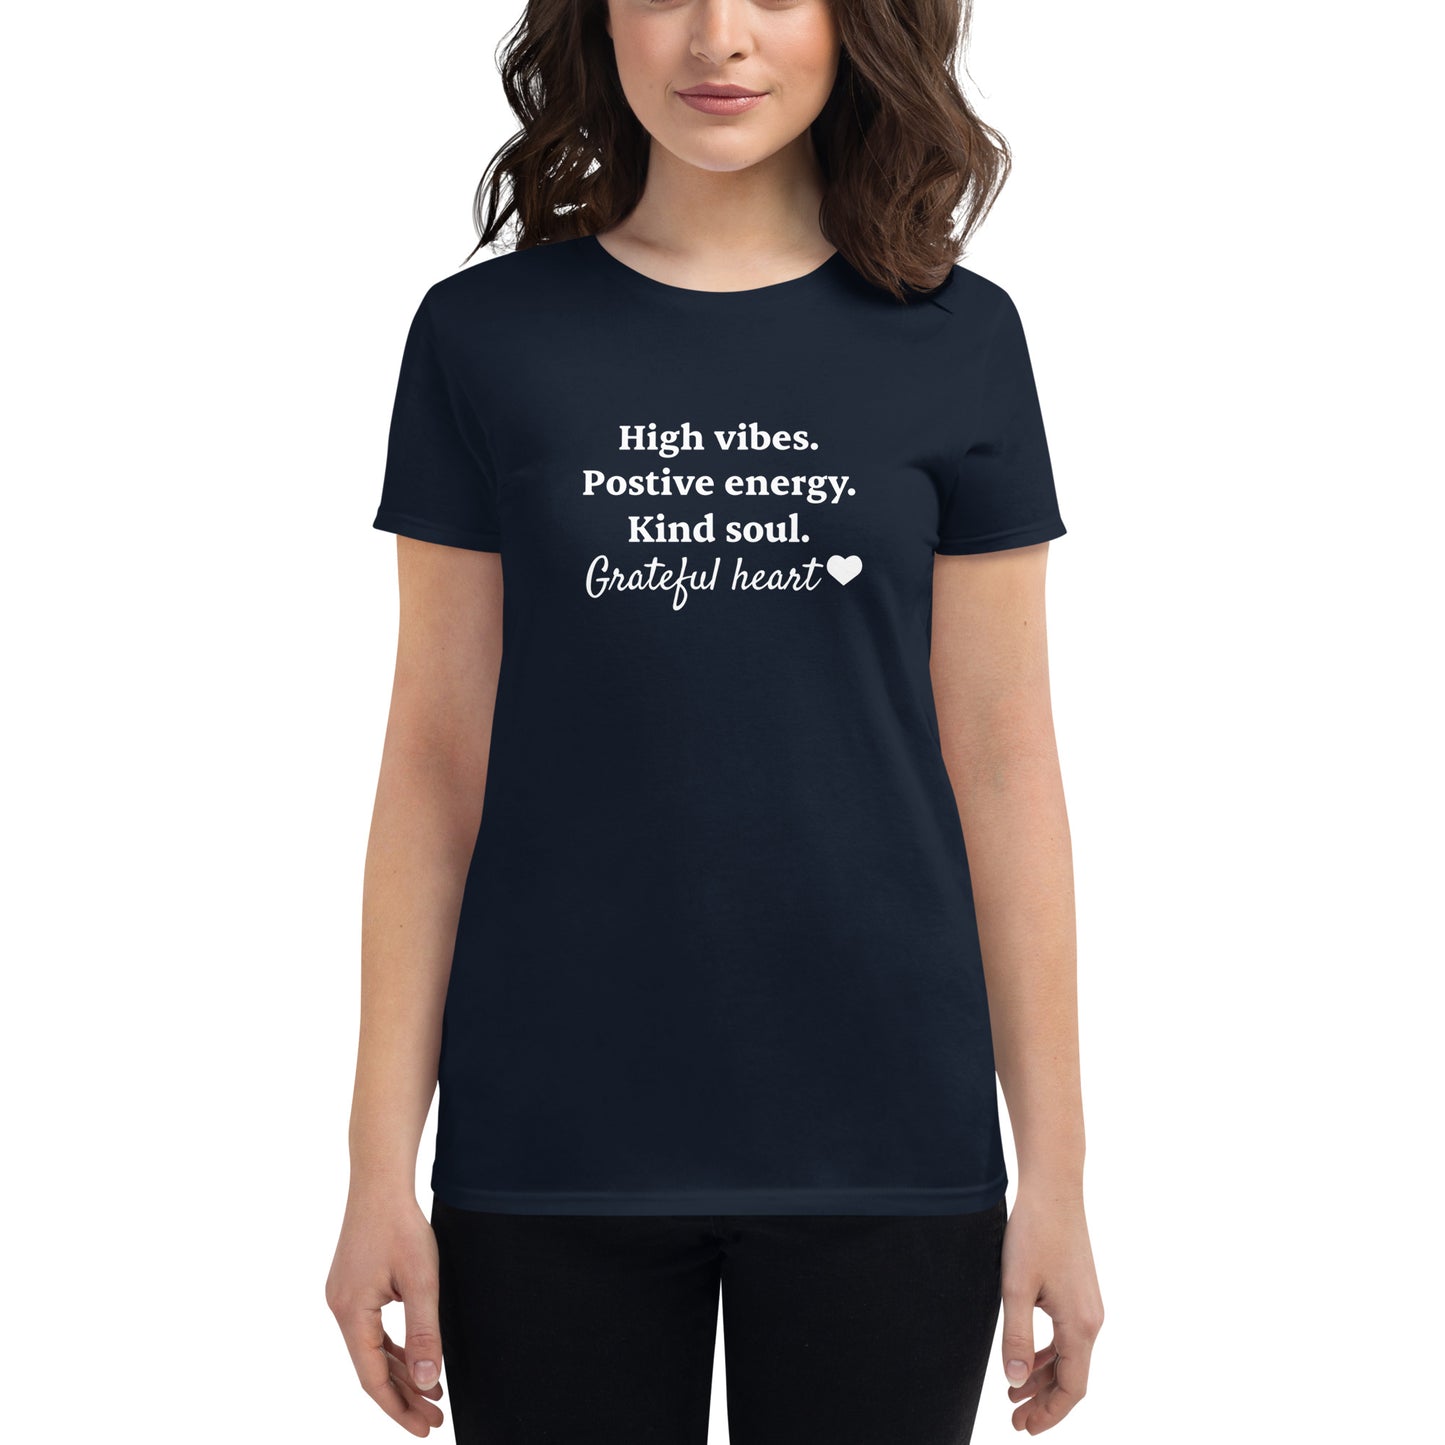 High vibes, grateful heart women's short sleeve t-shirt